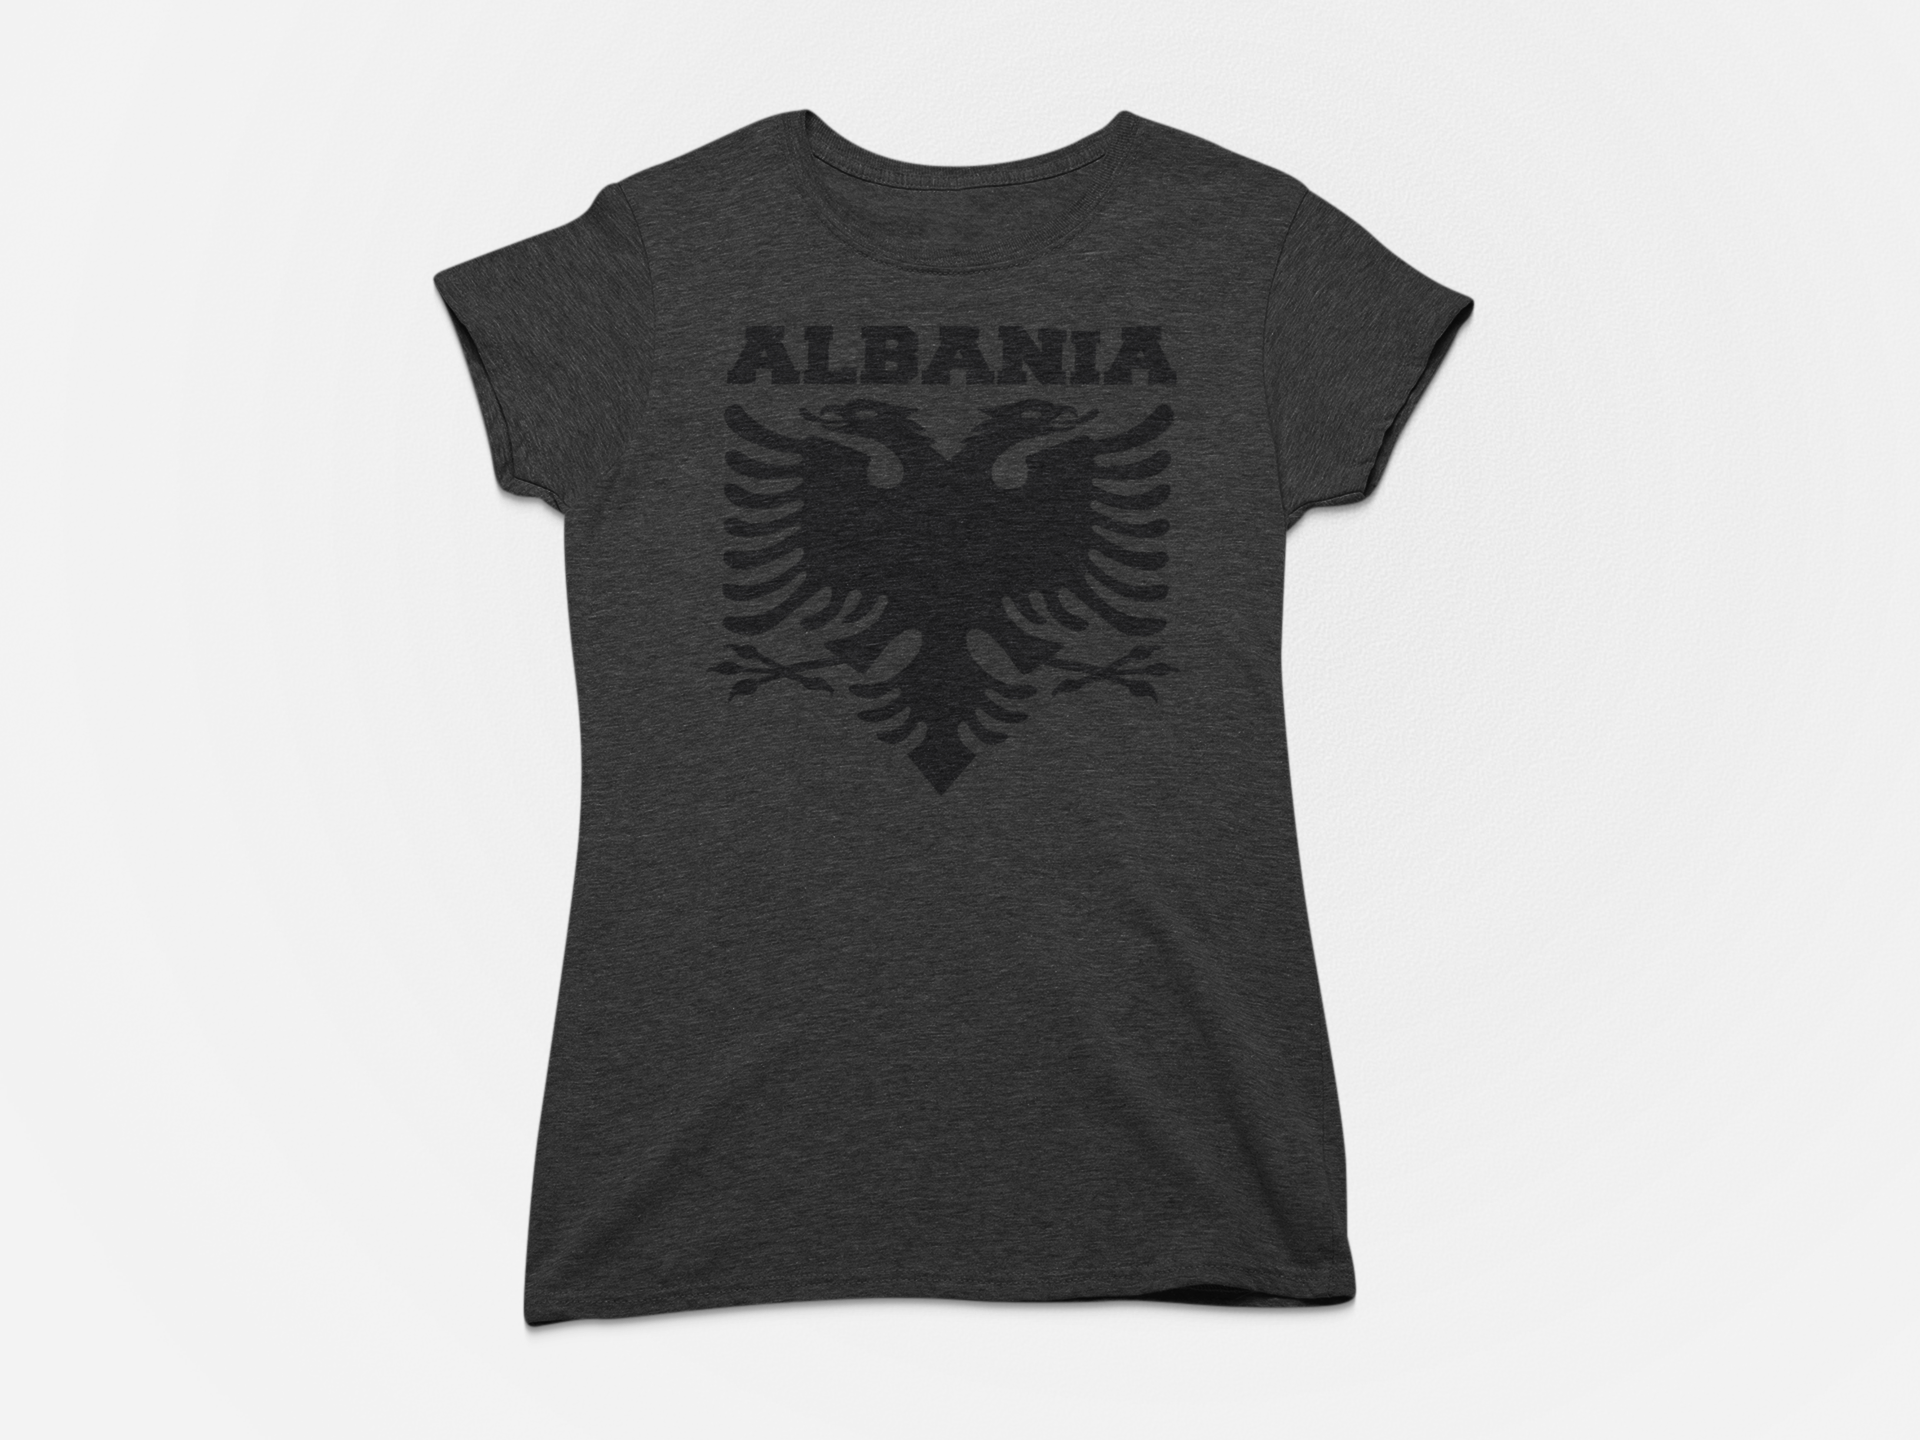 Albania T Shirt Albanian style double-headed eagle Albanian flag Tee Top  S-XXXL